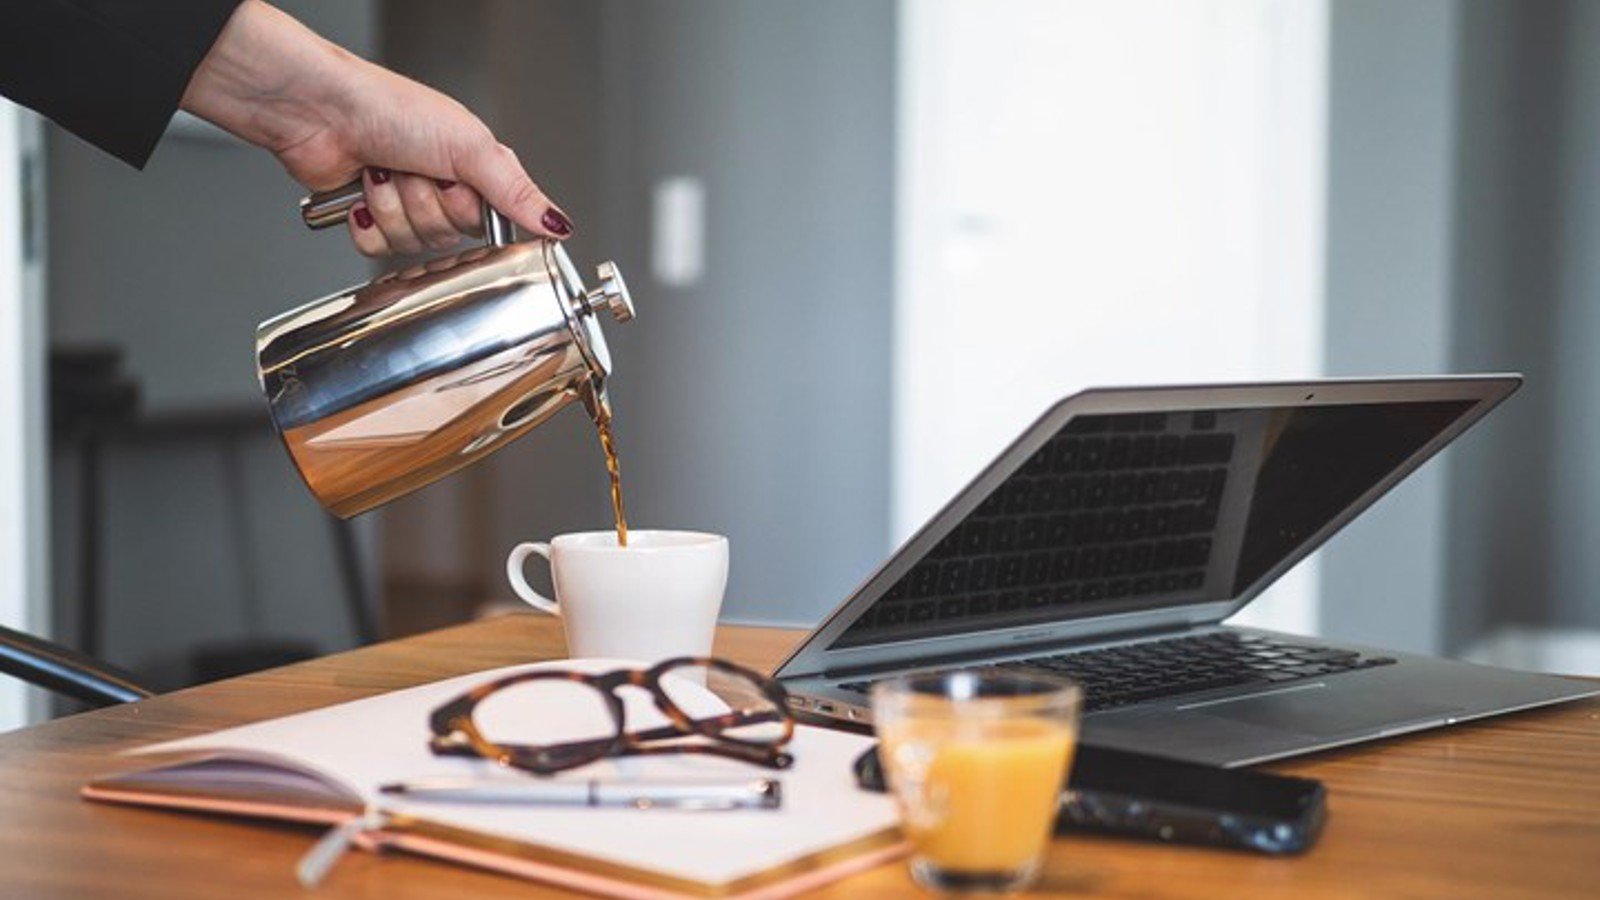 Detaljbild på hand som häller upp kaffe, med uppslagen bok och laptop i förgrunden